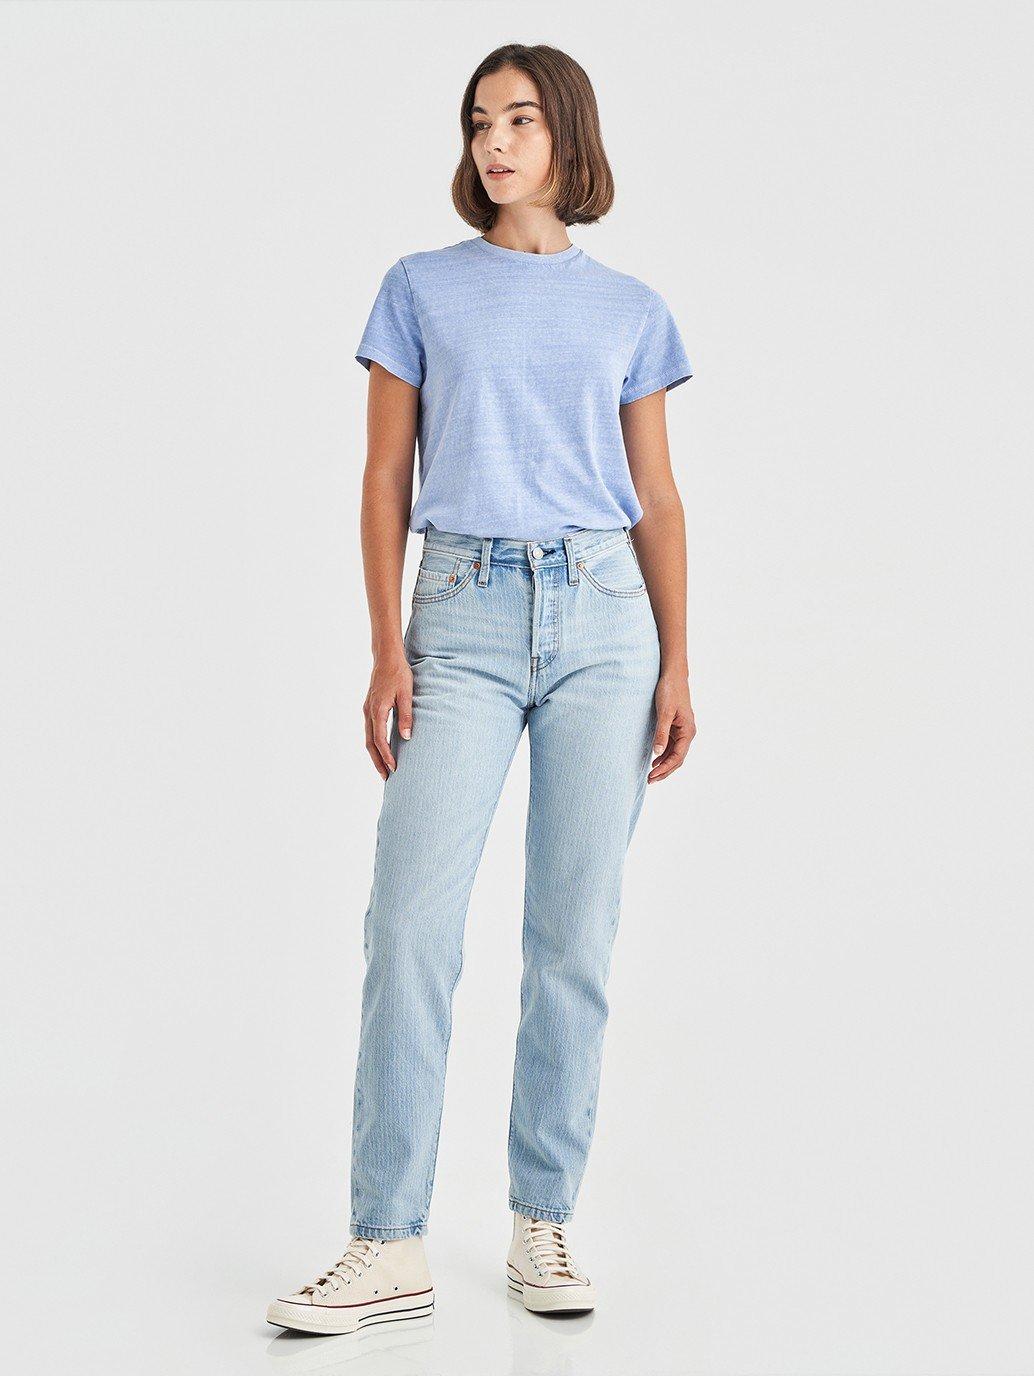 Trin nøgle Amorous Buy Levi's® Women's 501® '81 Jeans | Levi's® Official Online Store SG